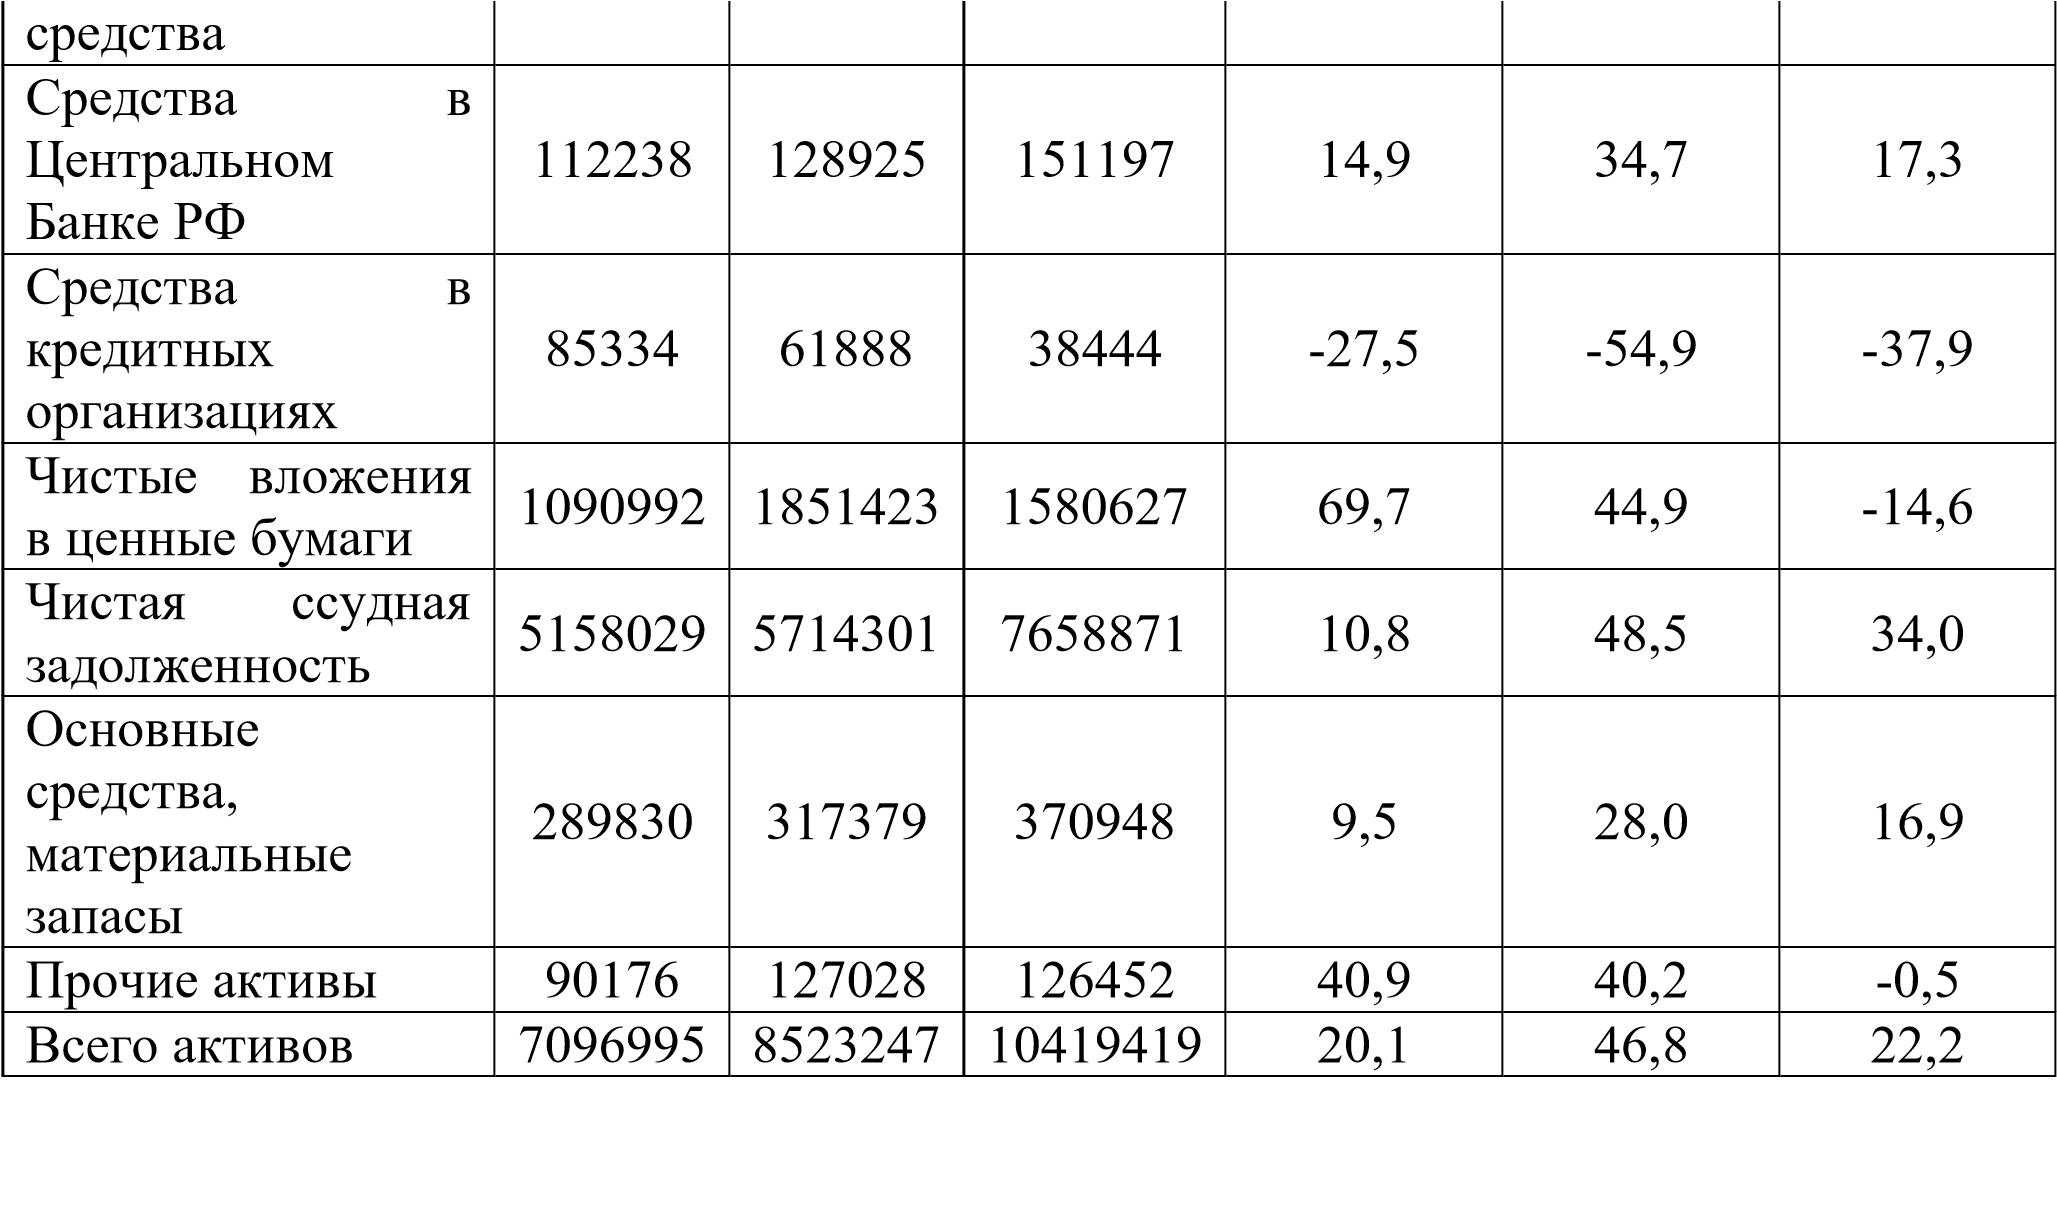 Основные финансовые показатели коэффициенты. Анализ динамики и структуры активов ПАО Сбербанк. Экономический анализ предприятия. Структура активов Сбербанка.